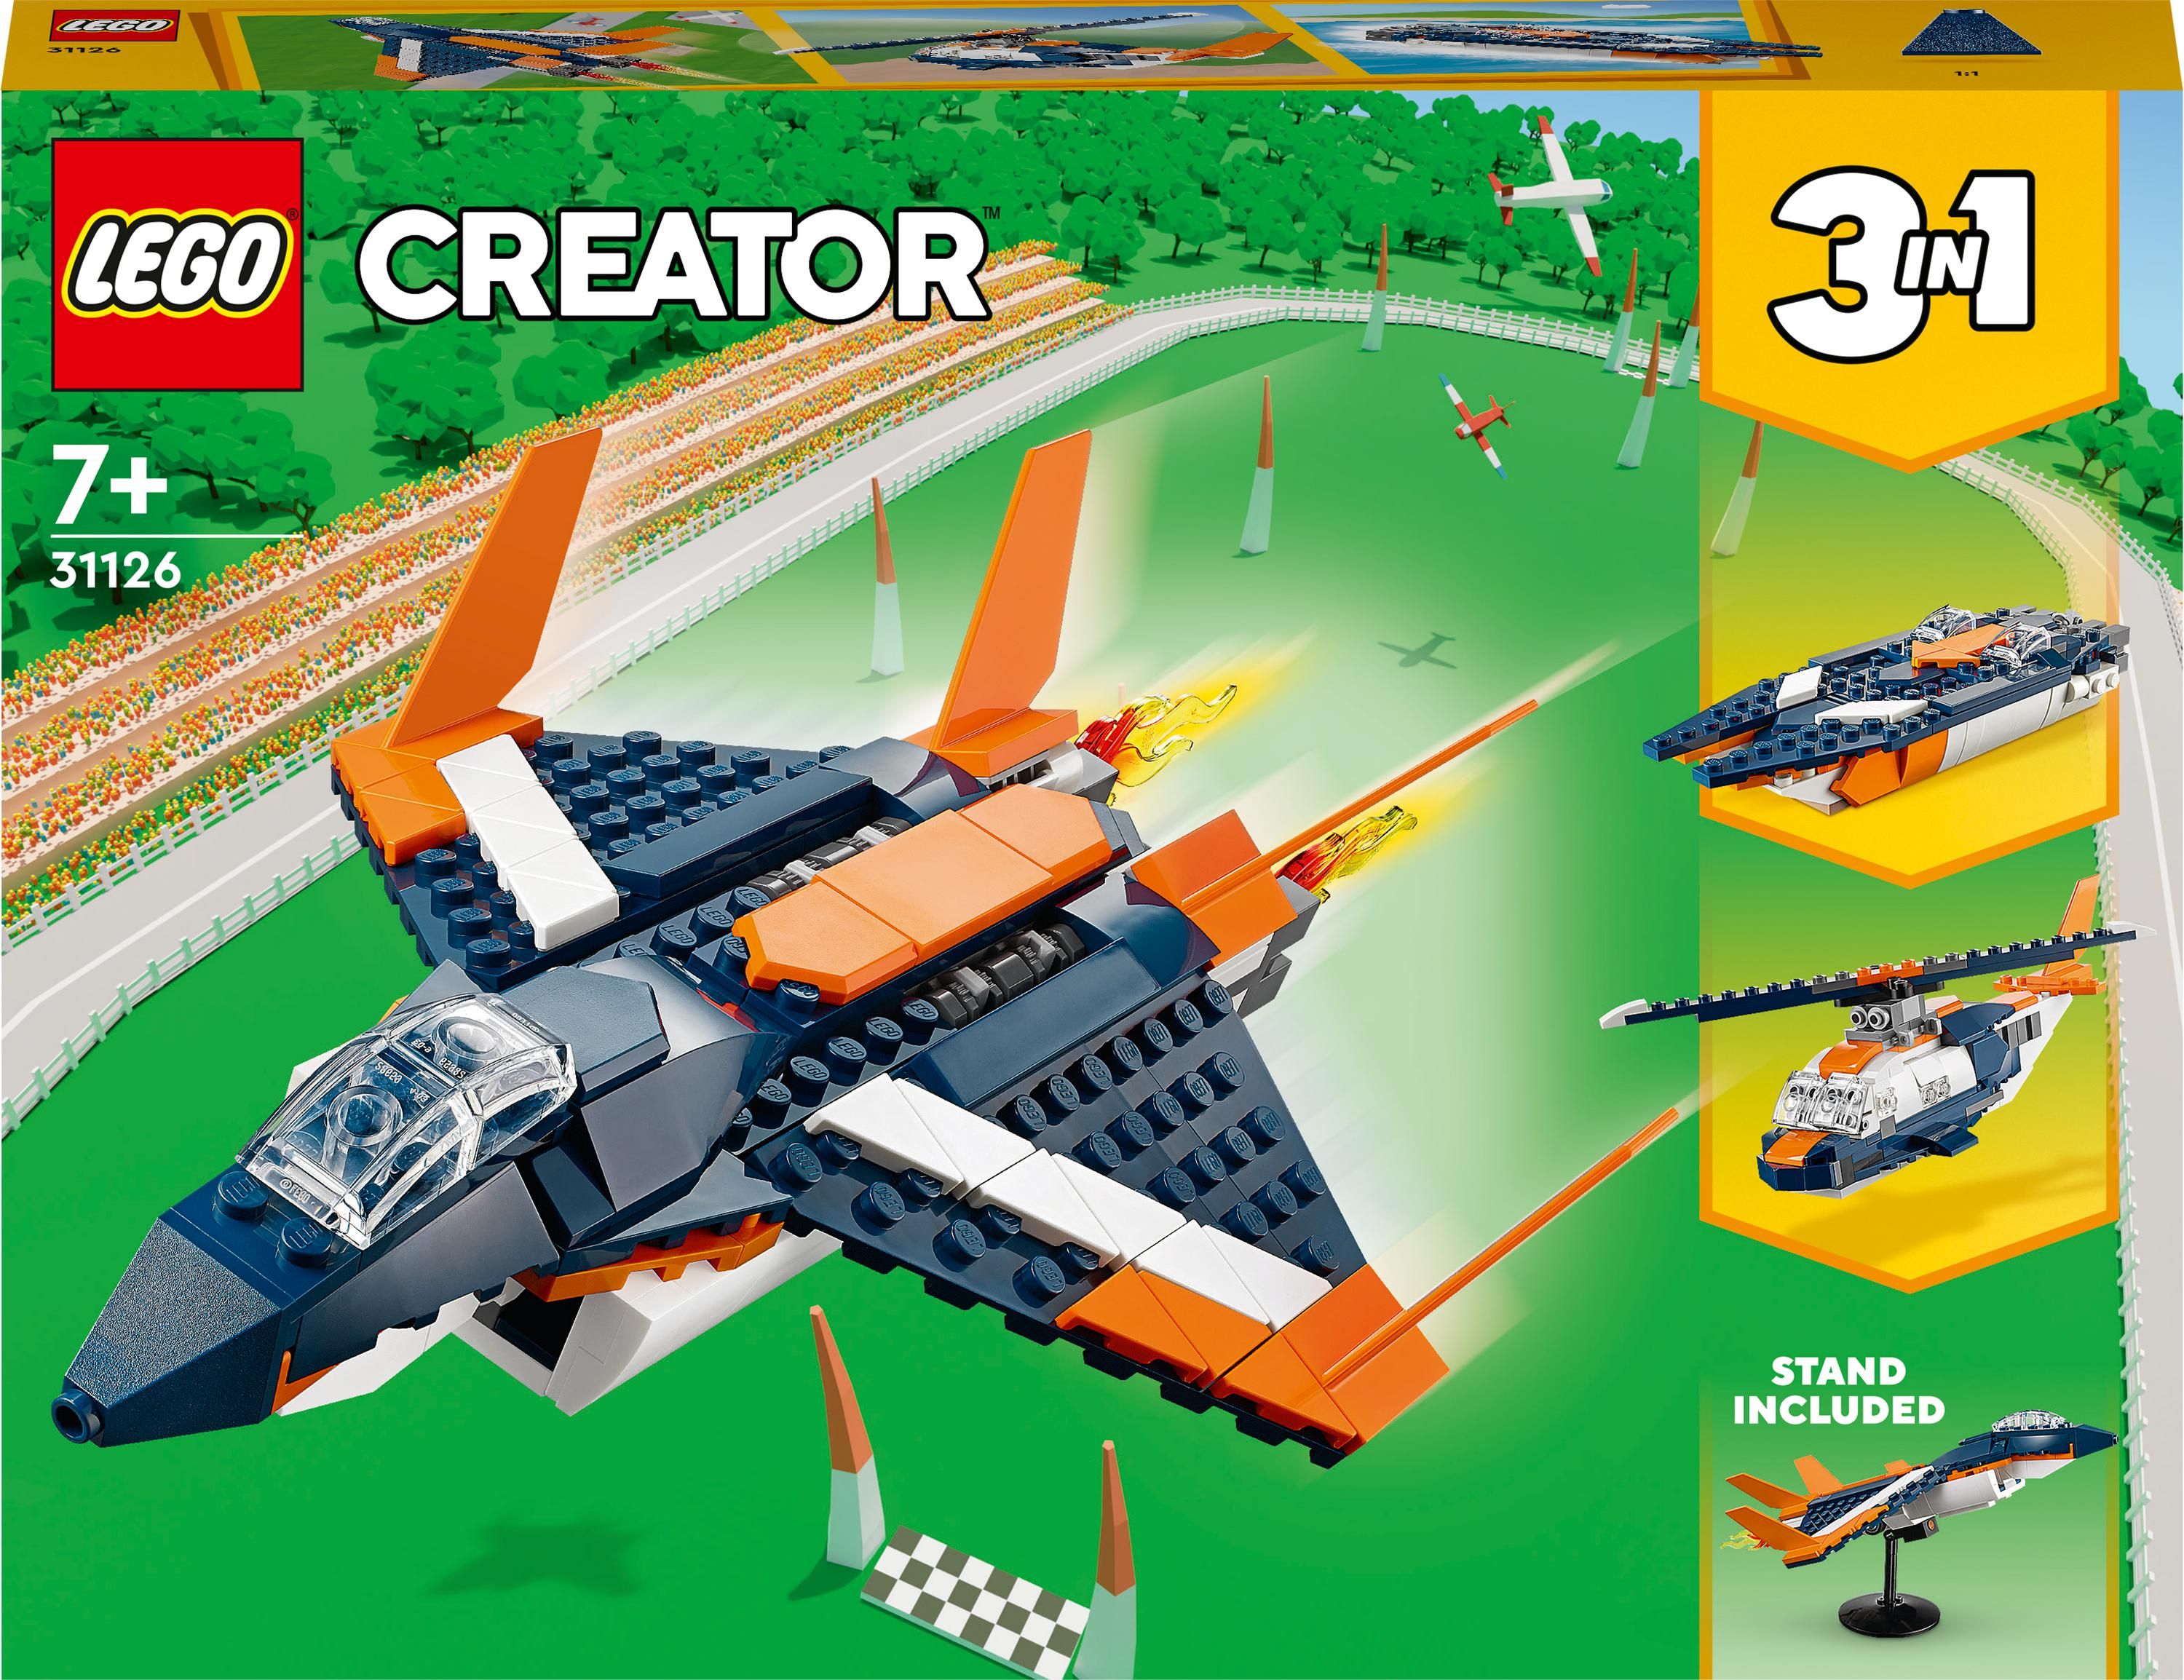 Jet supersonic LEGO Creator (31126)